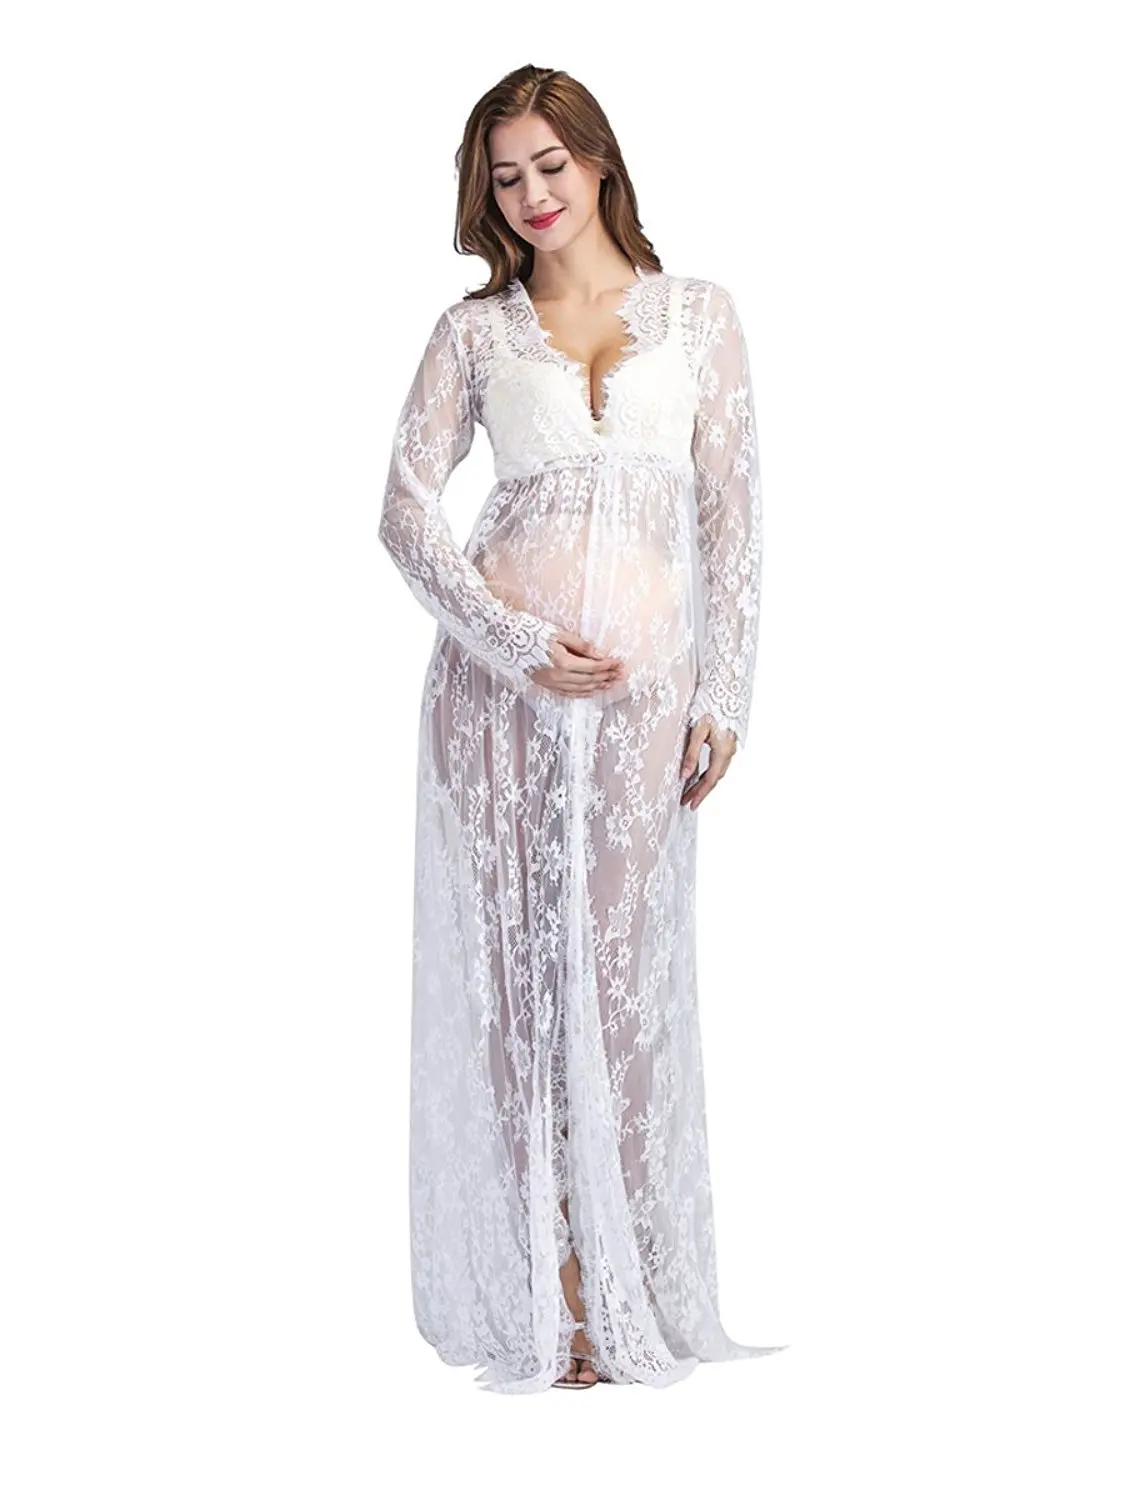 Цельнокроеное платье для кормящих мам, размер XXL, 160 см, кружевное платье для женщин, платья для беременных, праздничное платье для кормящих мам в подарок